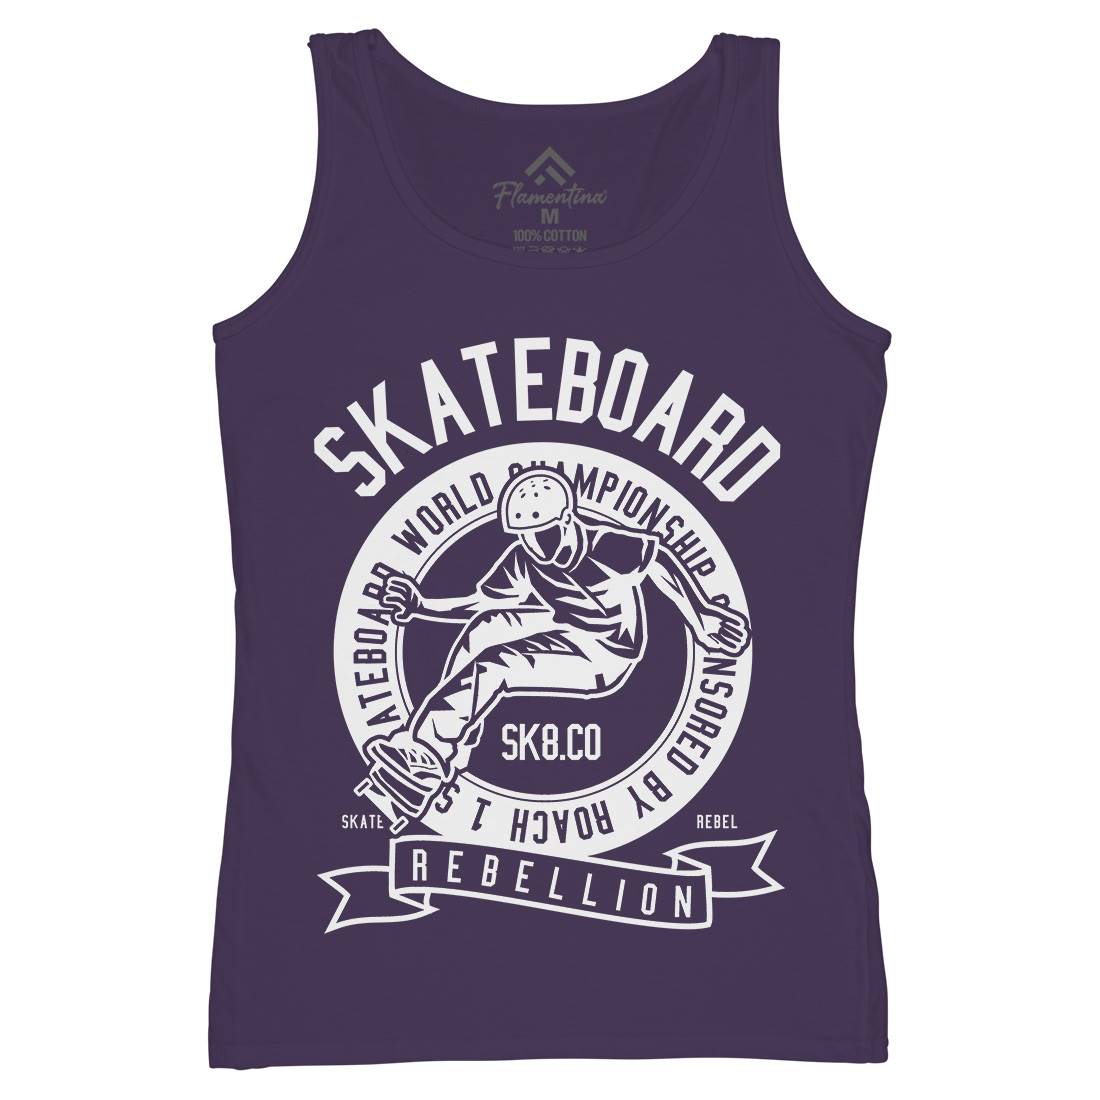 Skateboard Rebellion Womens Organic Tank Top Vest Skate B624